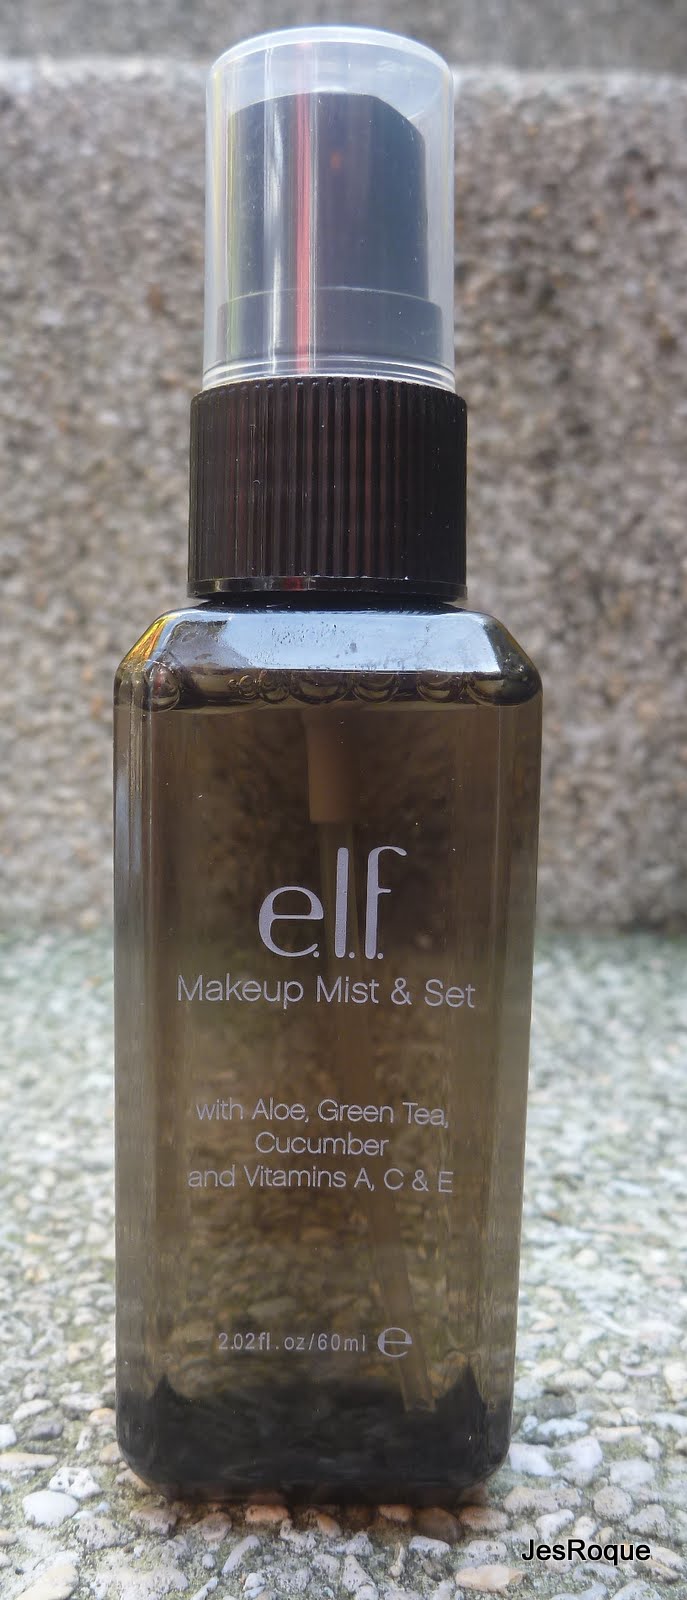 Rack australia and elf ingredients set mist makeup girls online evening